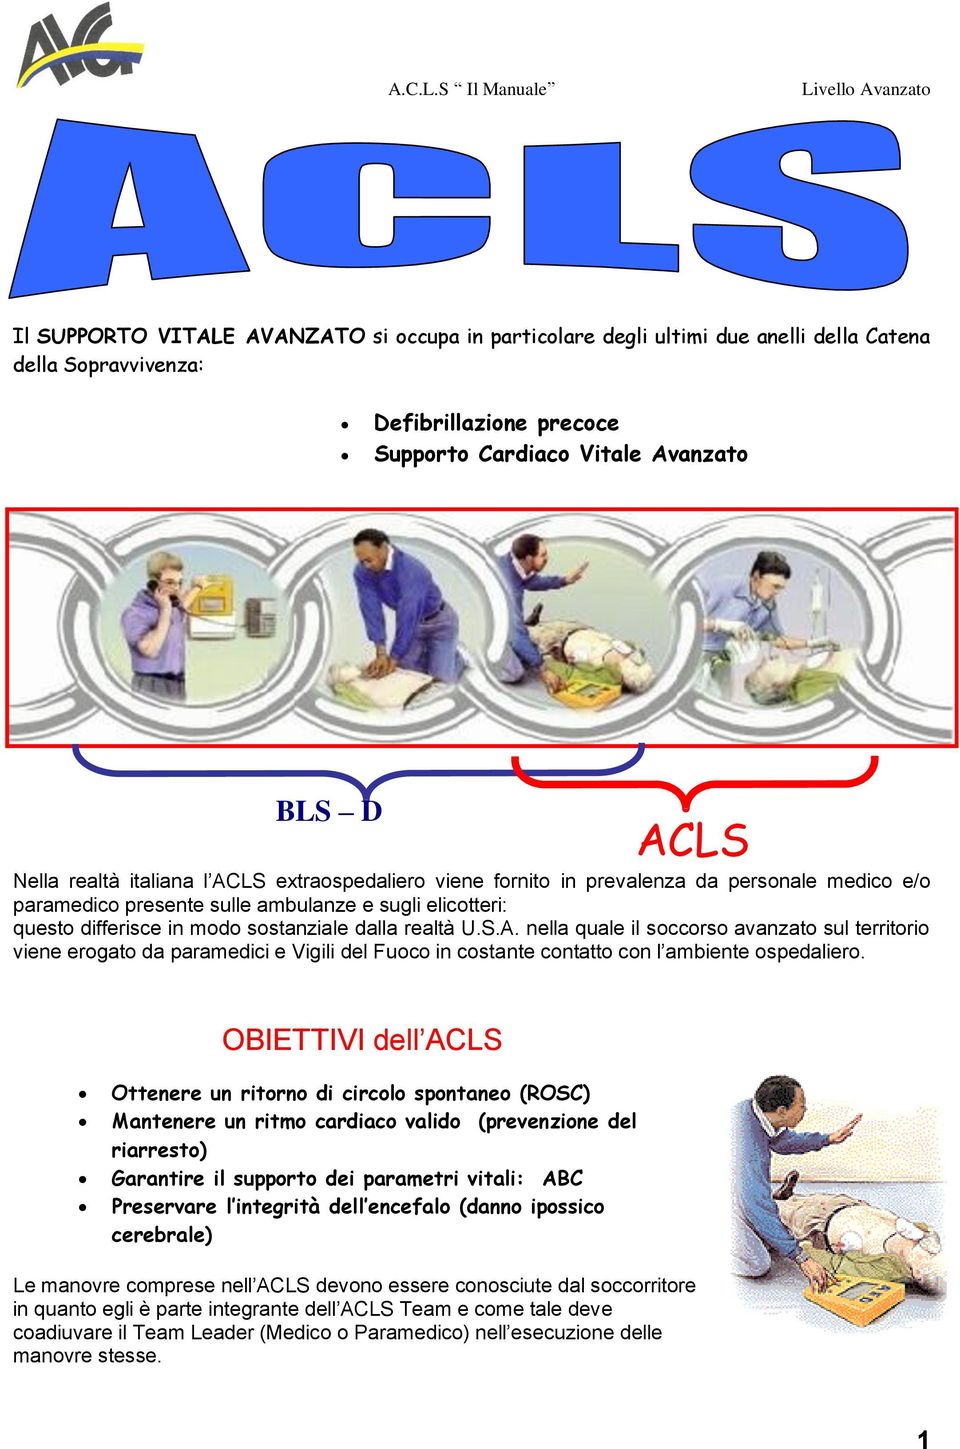 OBIETTIVI dell ACLS Ottenere un ritorno di circolo spontaneo (ROSC) Mantenere un ritmo cardiaco valido (prevenzione del riarresto) Garantire il supporto dei parametri vitali: ABC Preservare l